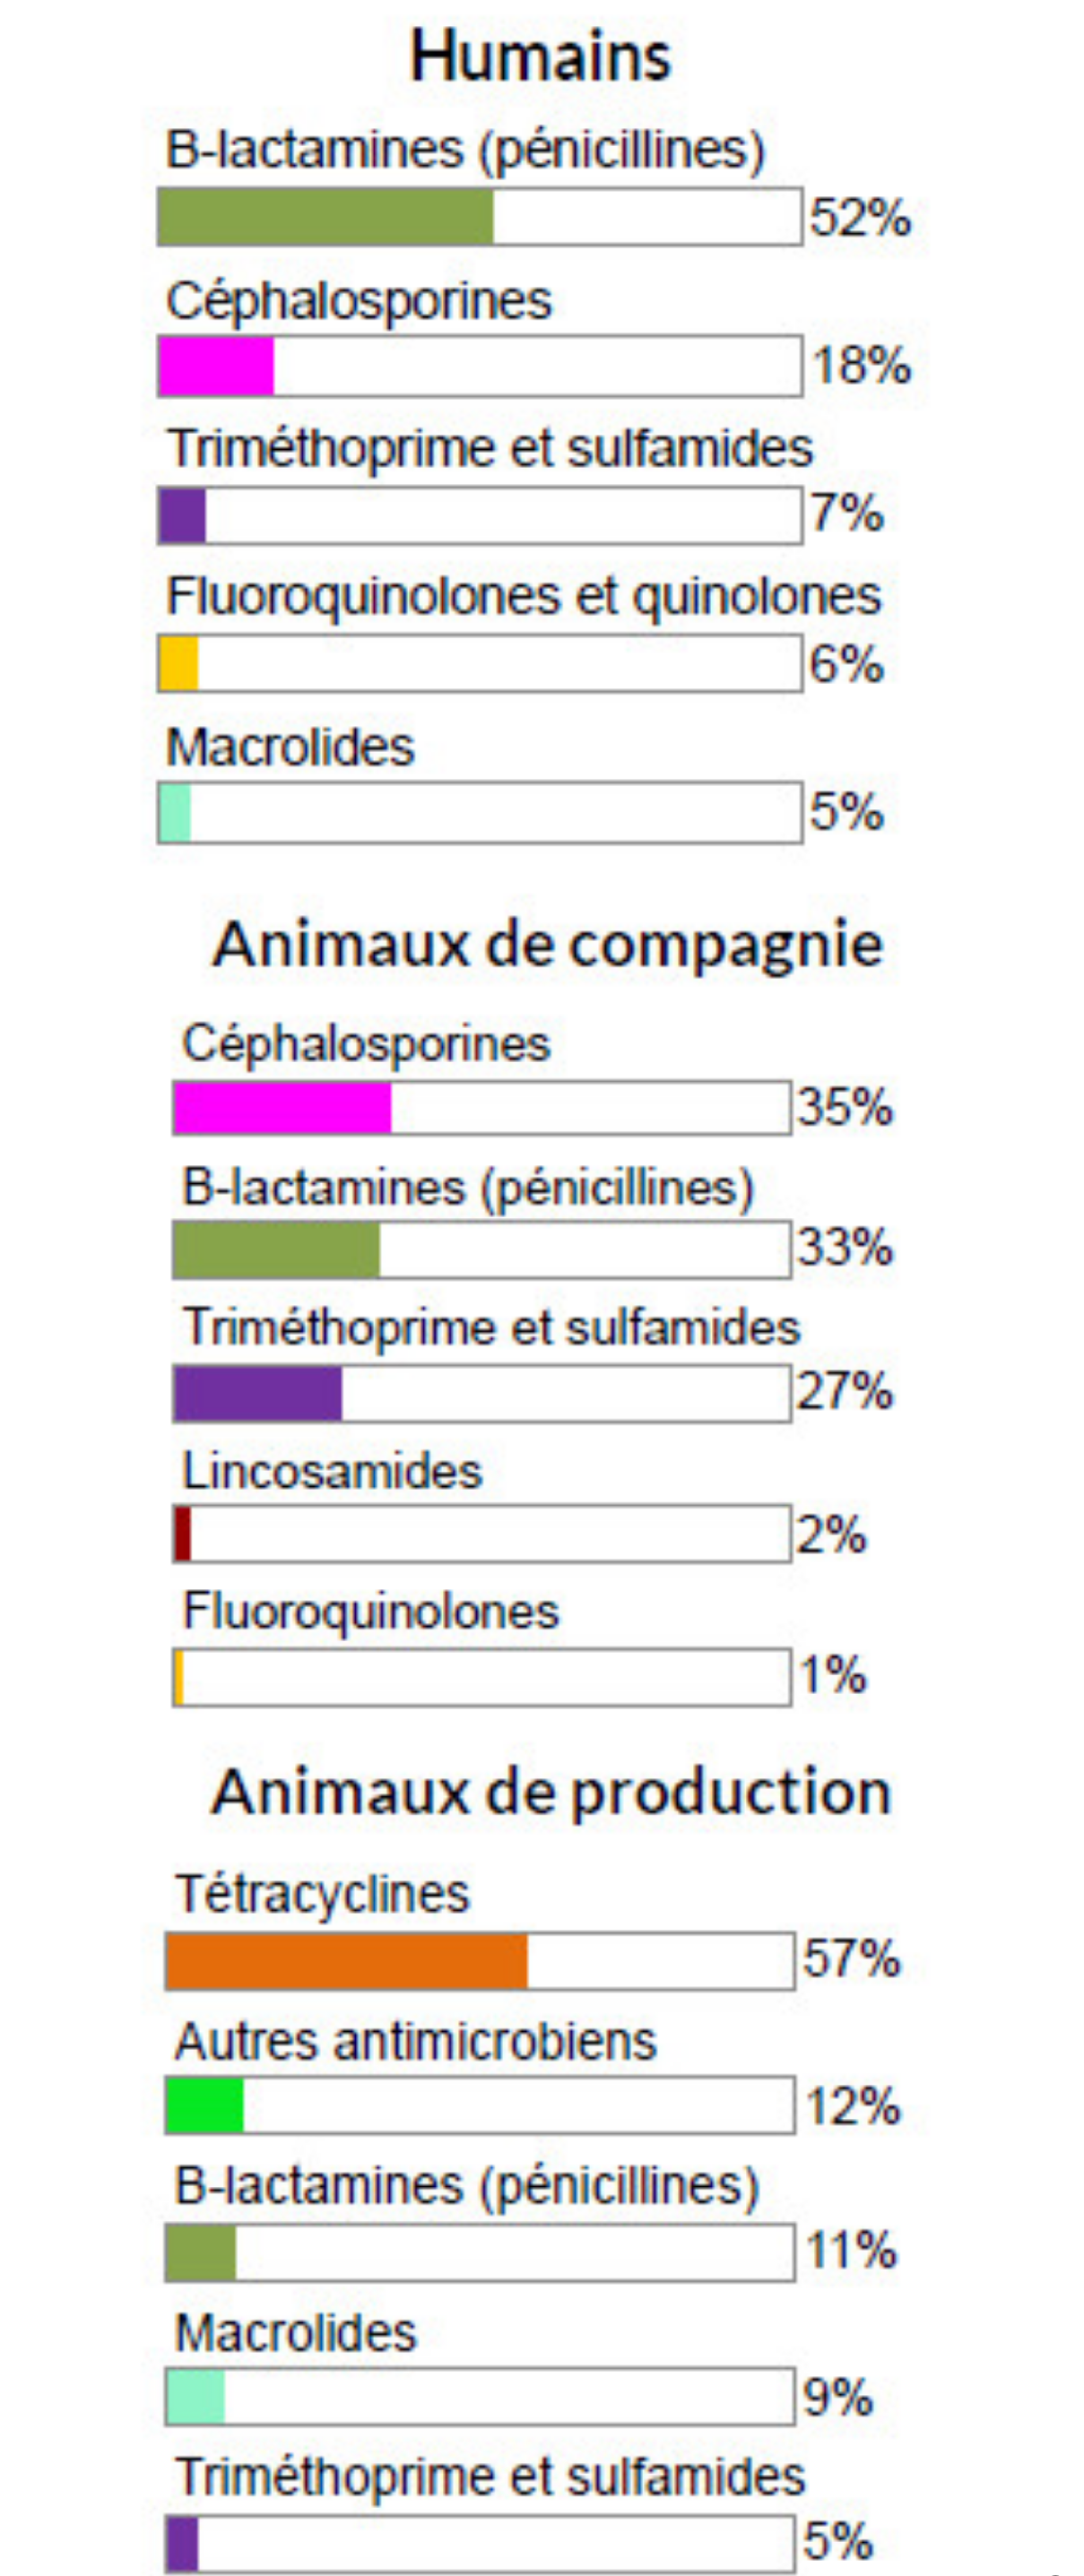 Figure 3. Proportion de la quantité totale en kilogrammes des classes d'antimicrobiens distribuées et/ou vendues en 2018 chez les humains, les animaux de production et les animaux de compagnie. Équivalent textuel ci-dessous.